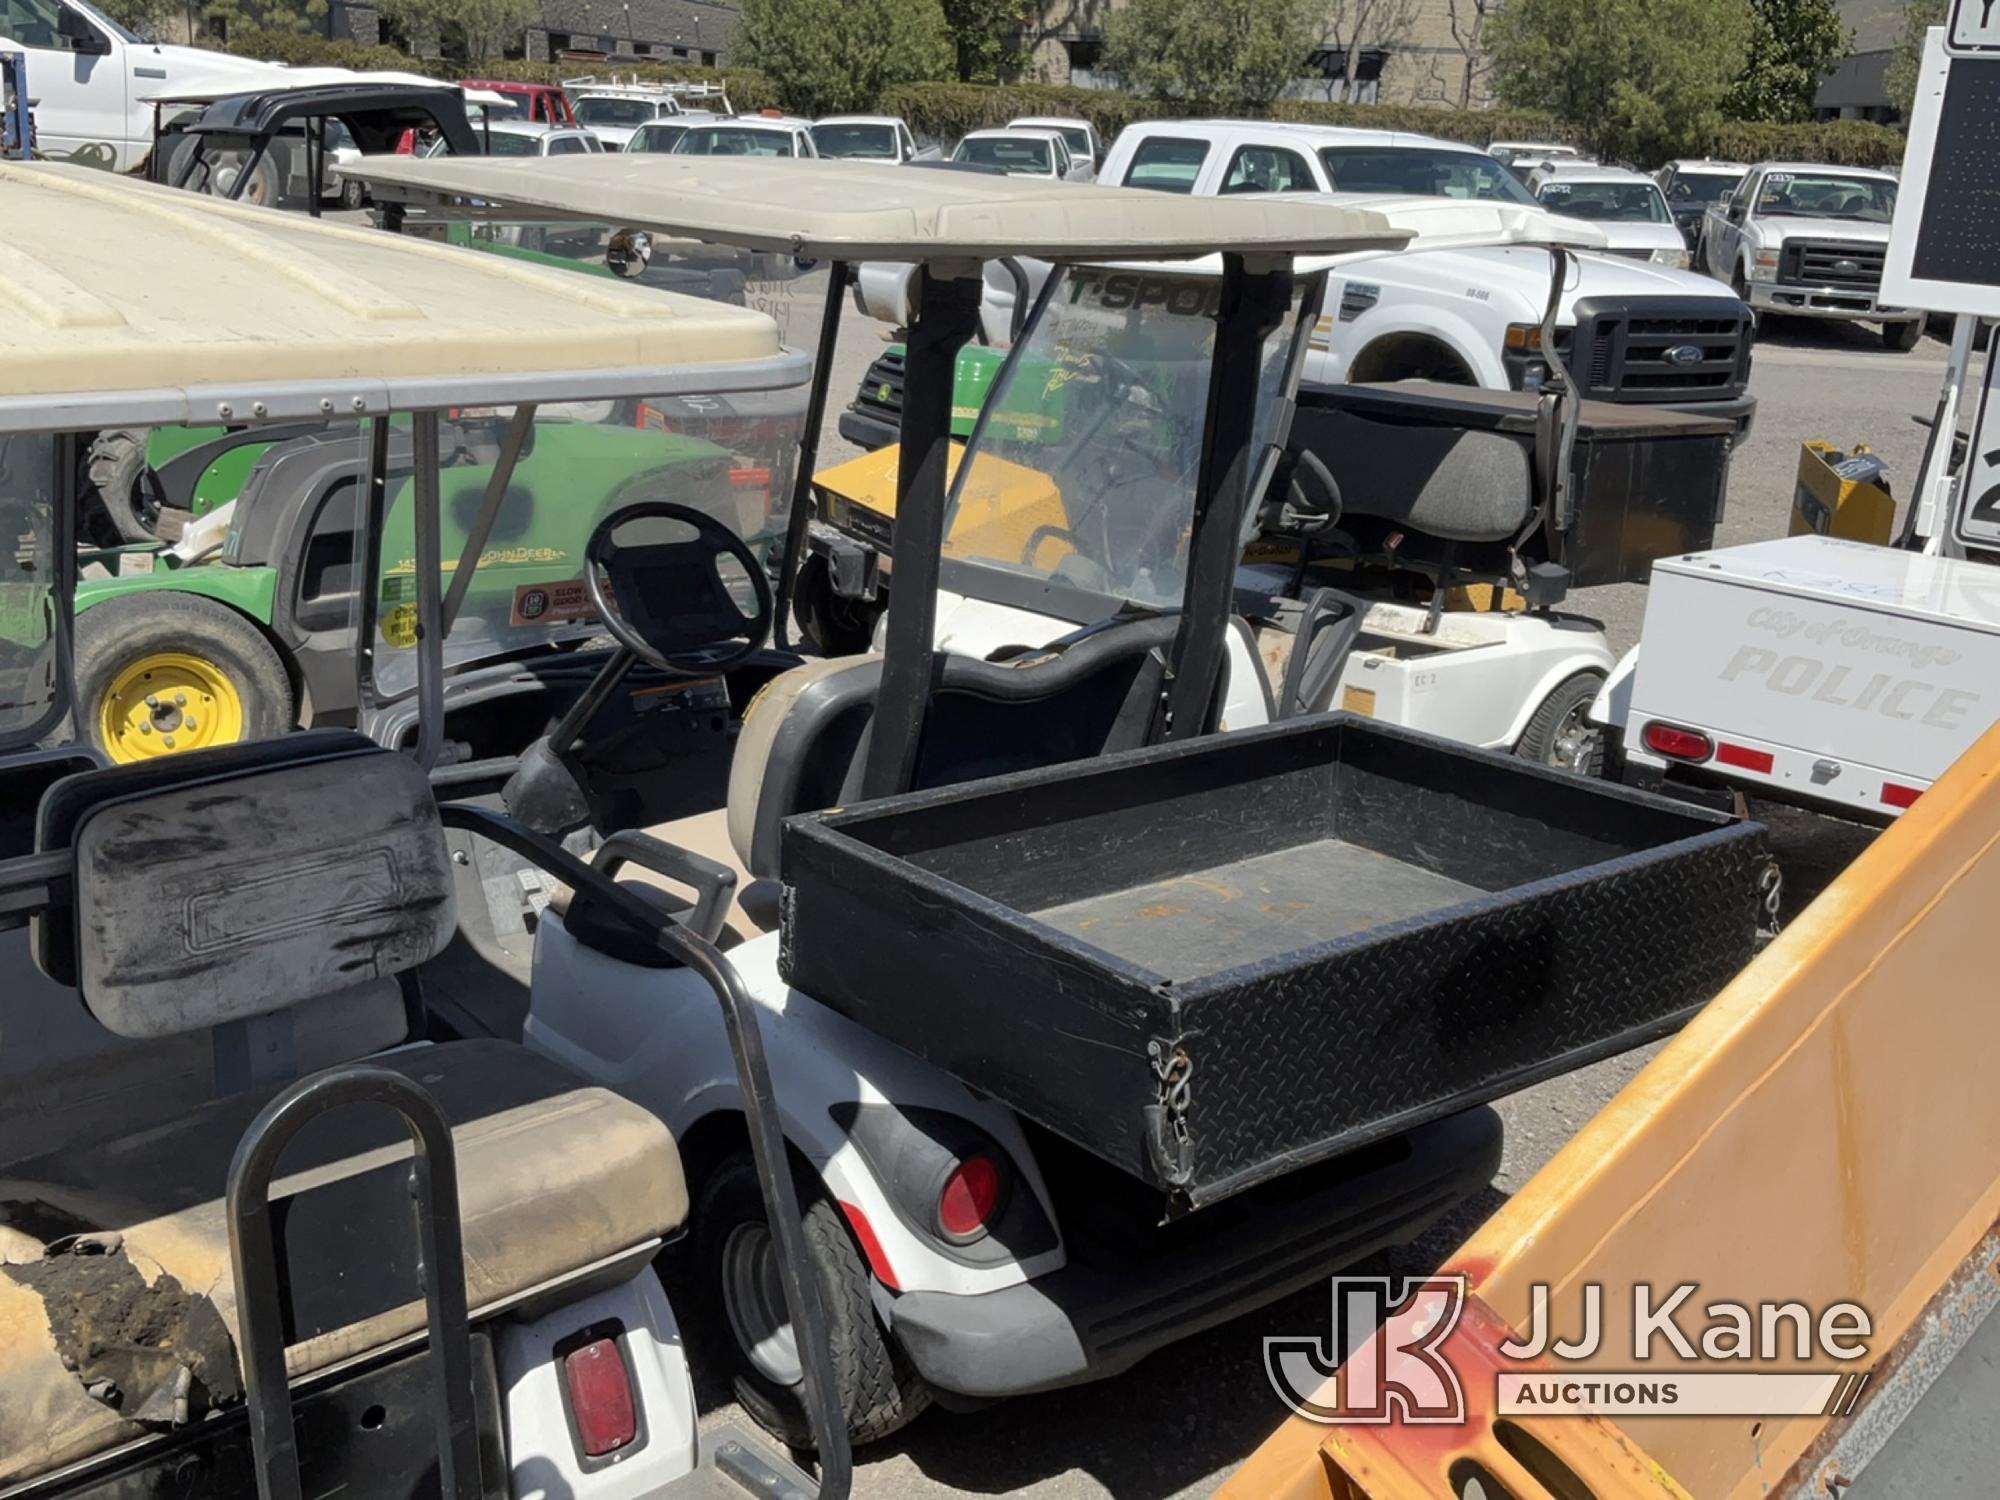 (Jurupa Valley, CA) 2011 Yamaha Golf Cart Runs & Moves, Bad Tires , No Key